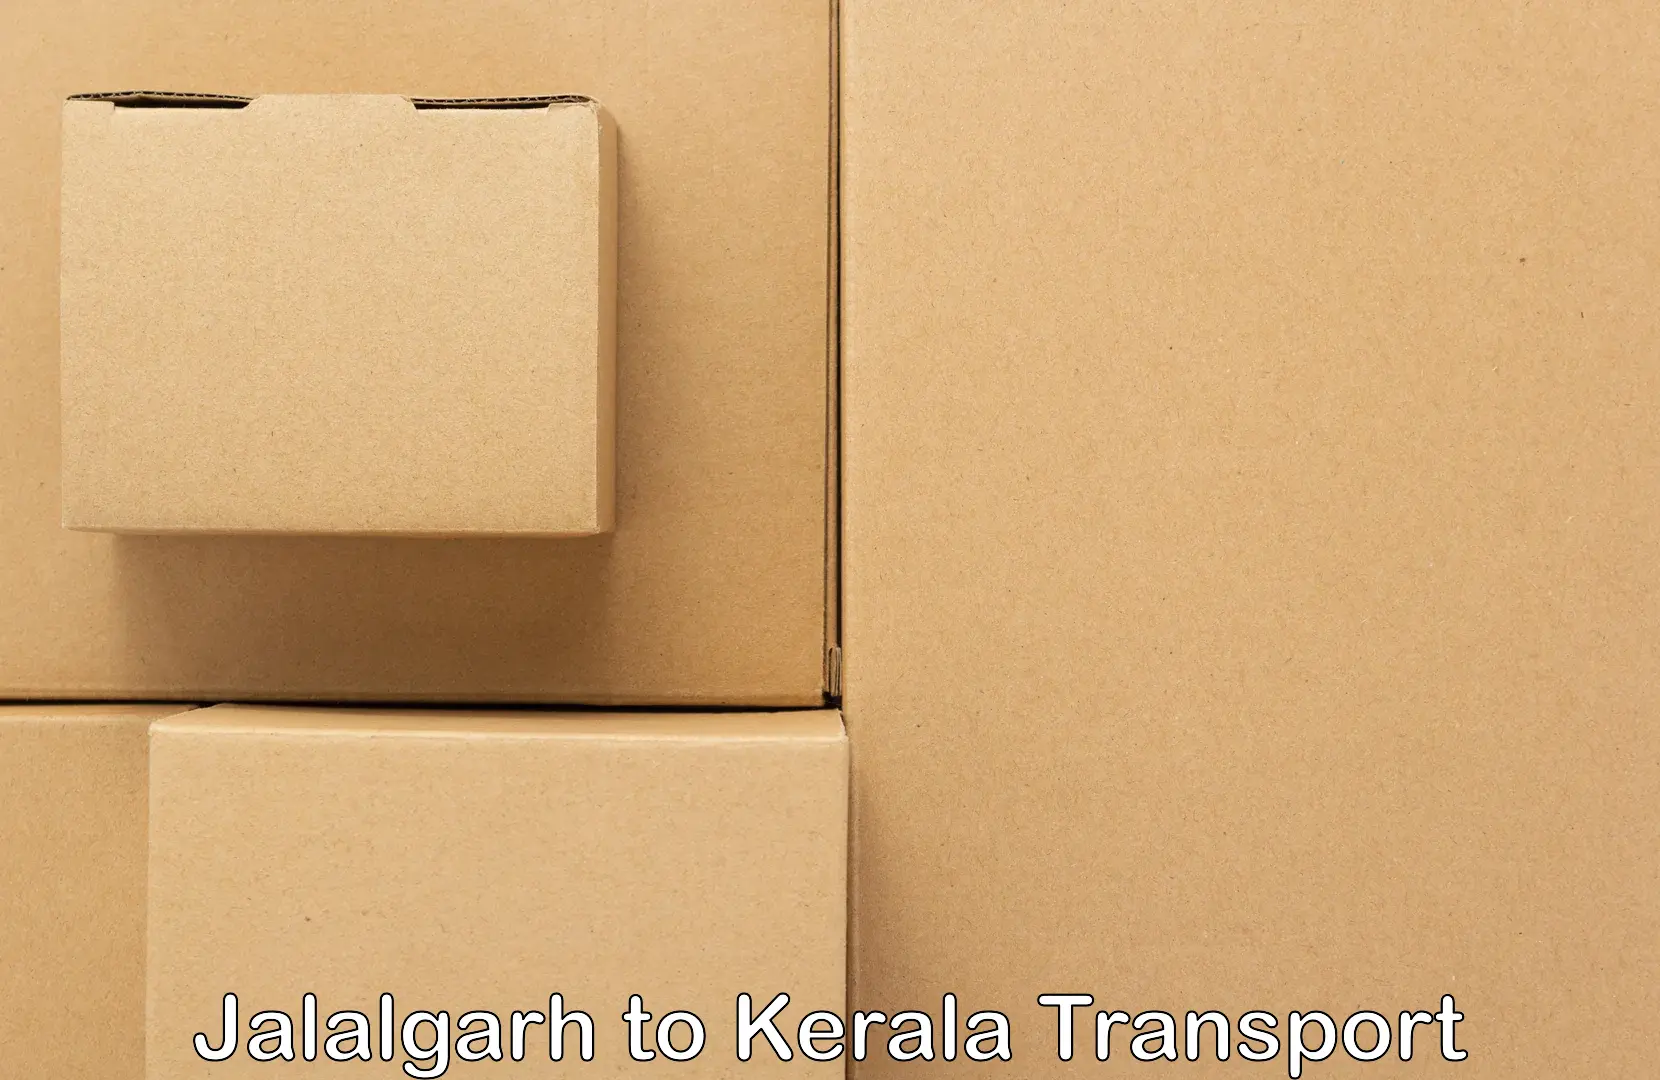 Commercial transport service Jalalgarh to Parakkadavu